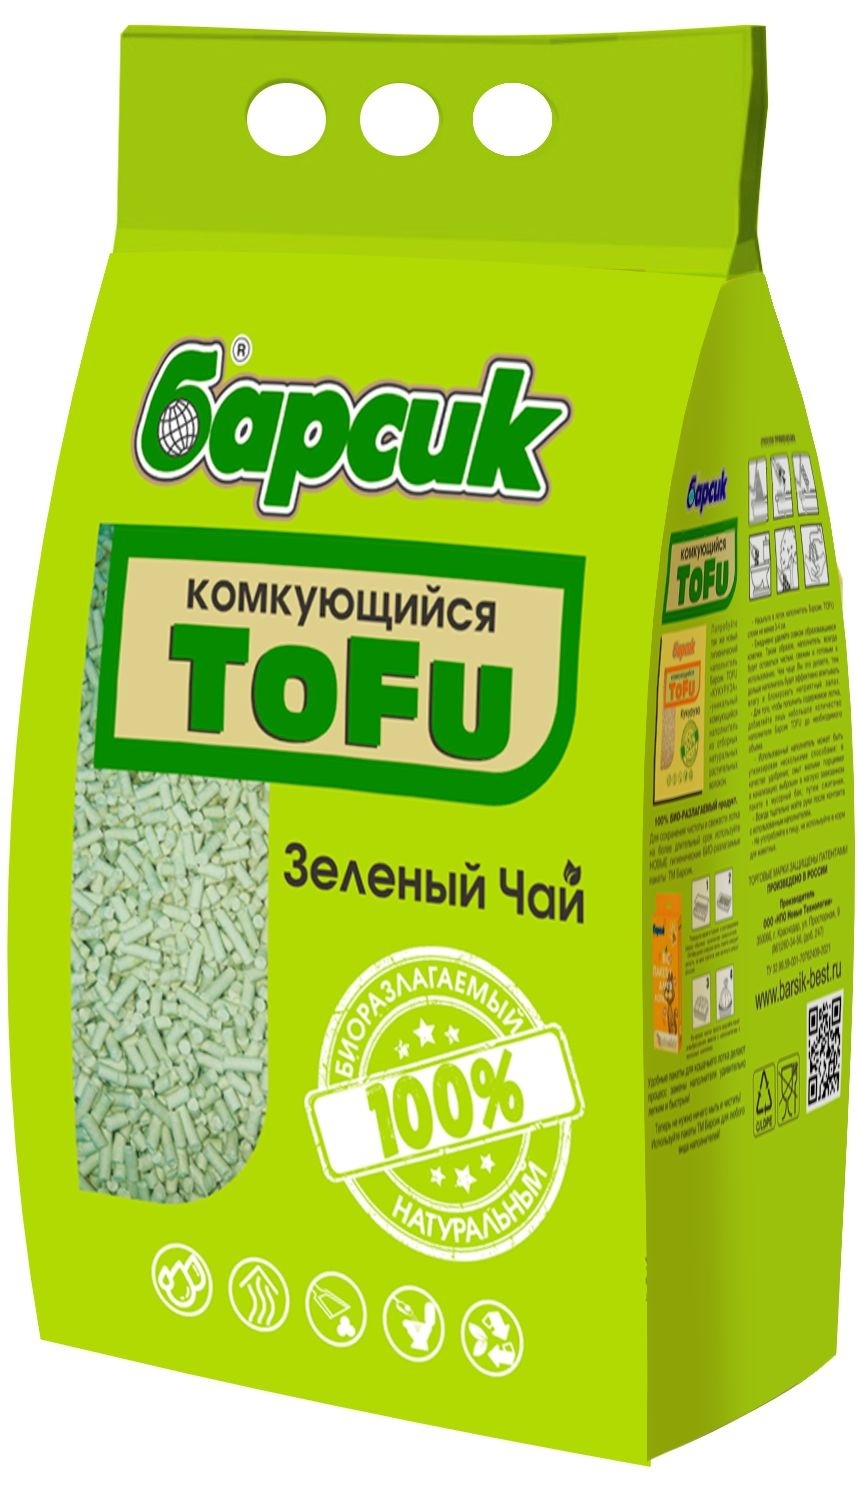 наполнитель комкующийся барсик tofu зеленый чай 15 л Барсик Барсик наполнитель комкующийся TOFU, Зелёный Чай (2,3 кг)